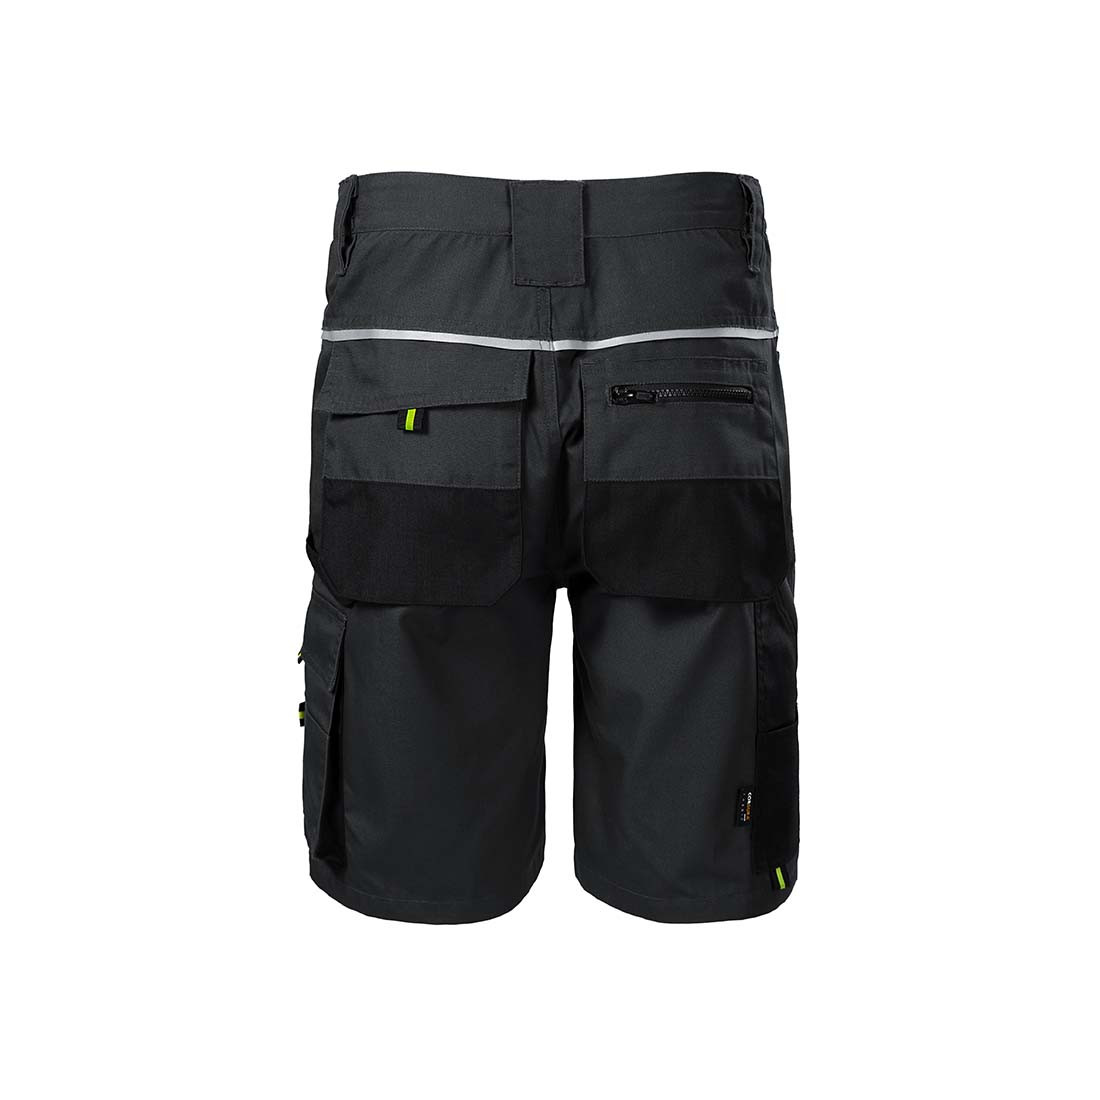 Pantalones cortos de trabajo RANGER para hombres - Ropa de protección